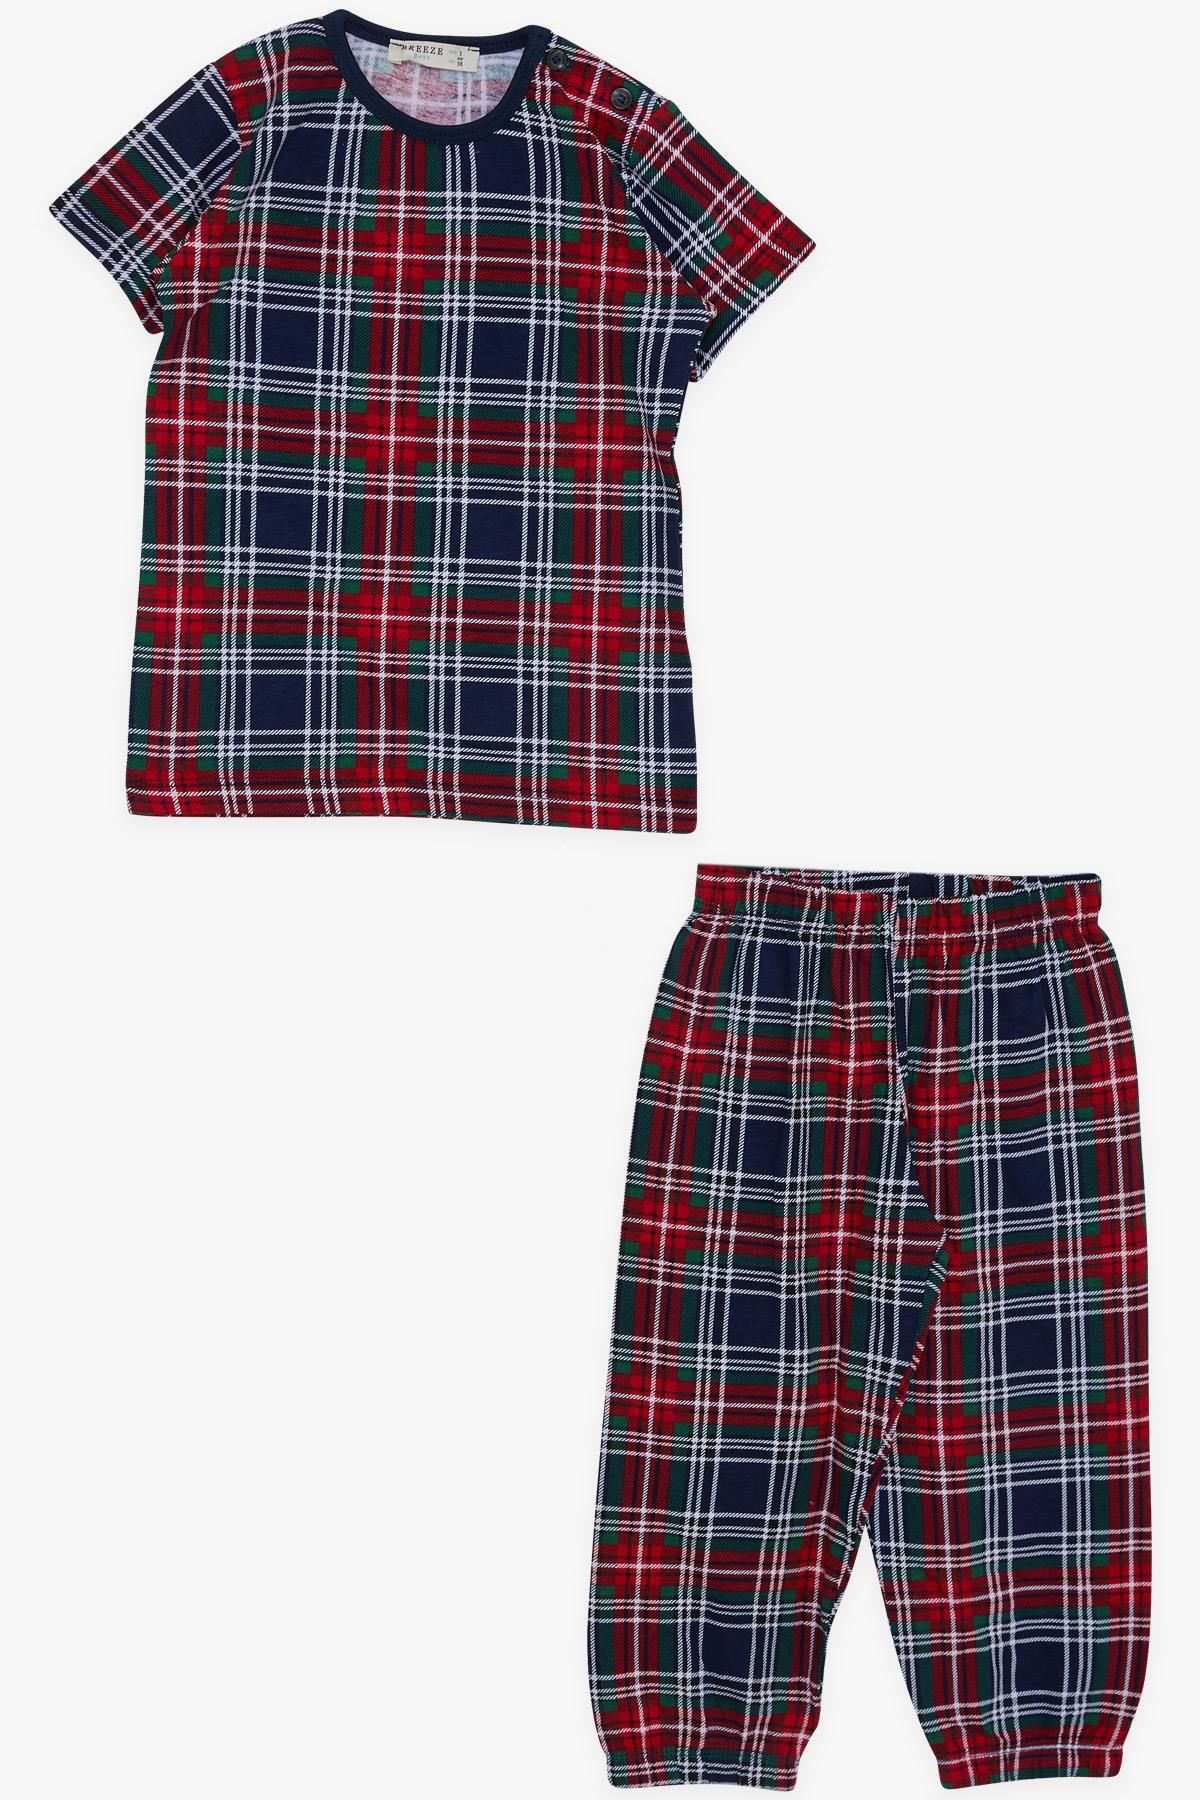 Breeze Erkek Bebek Kısa Kollu Pijama Takımı Ekose Desenli 9 Ay-3 Yaş, Karışık Renk